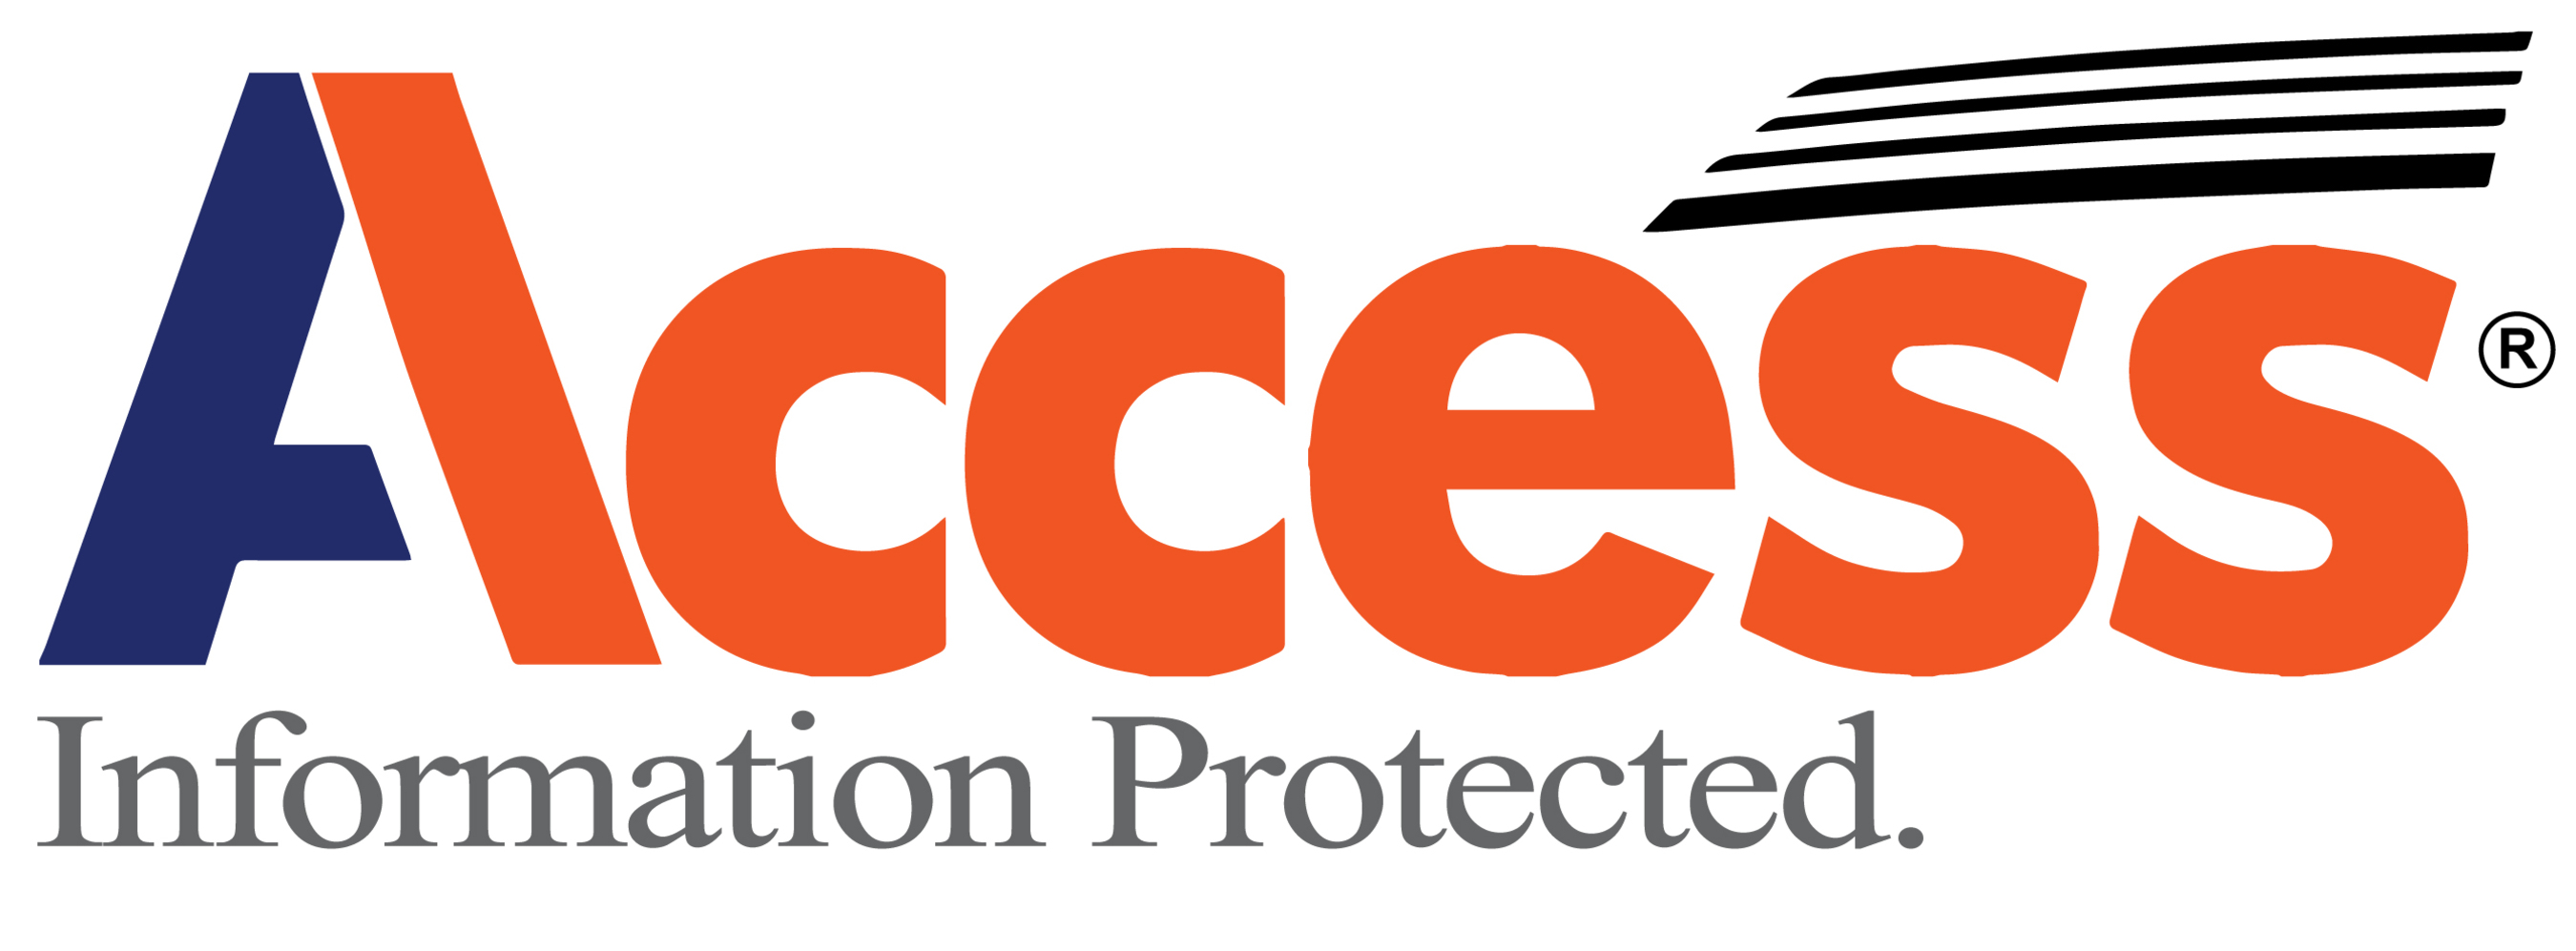 Access Company Logo.